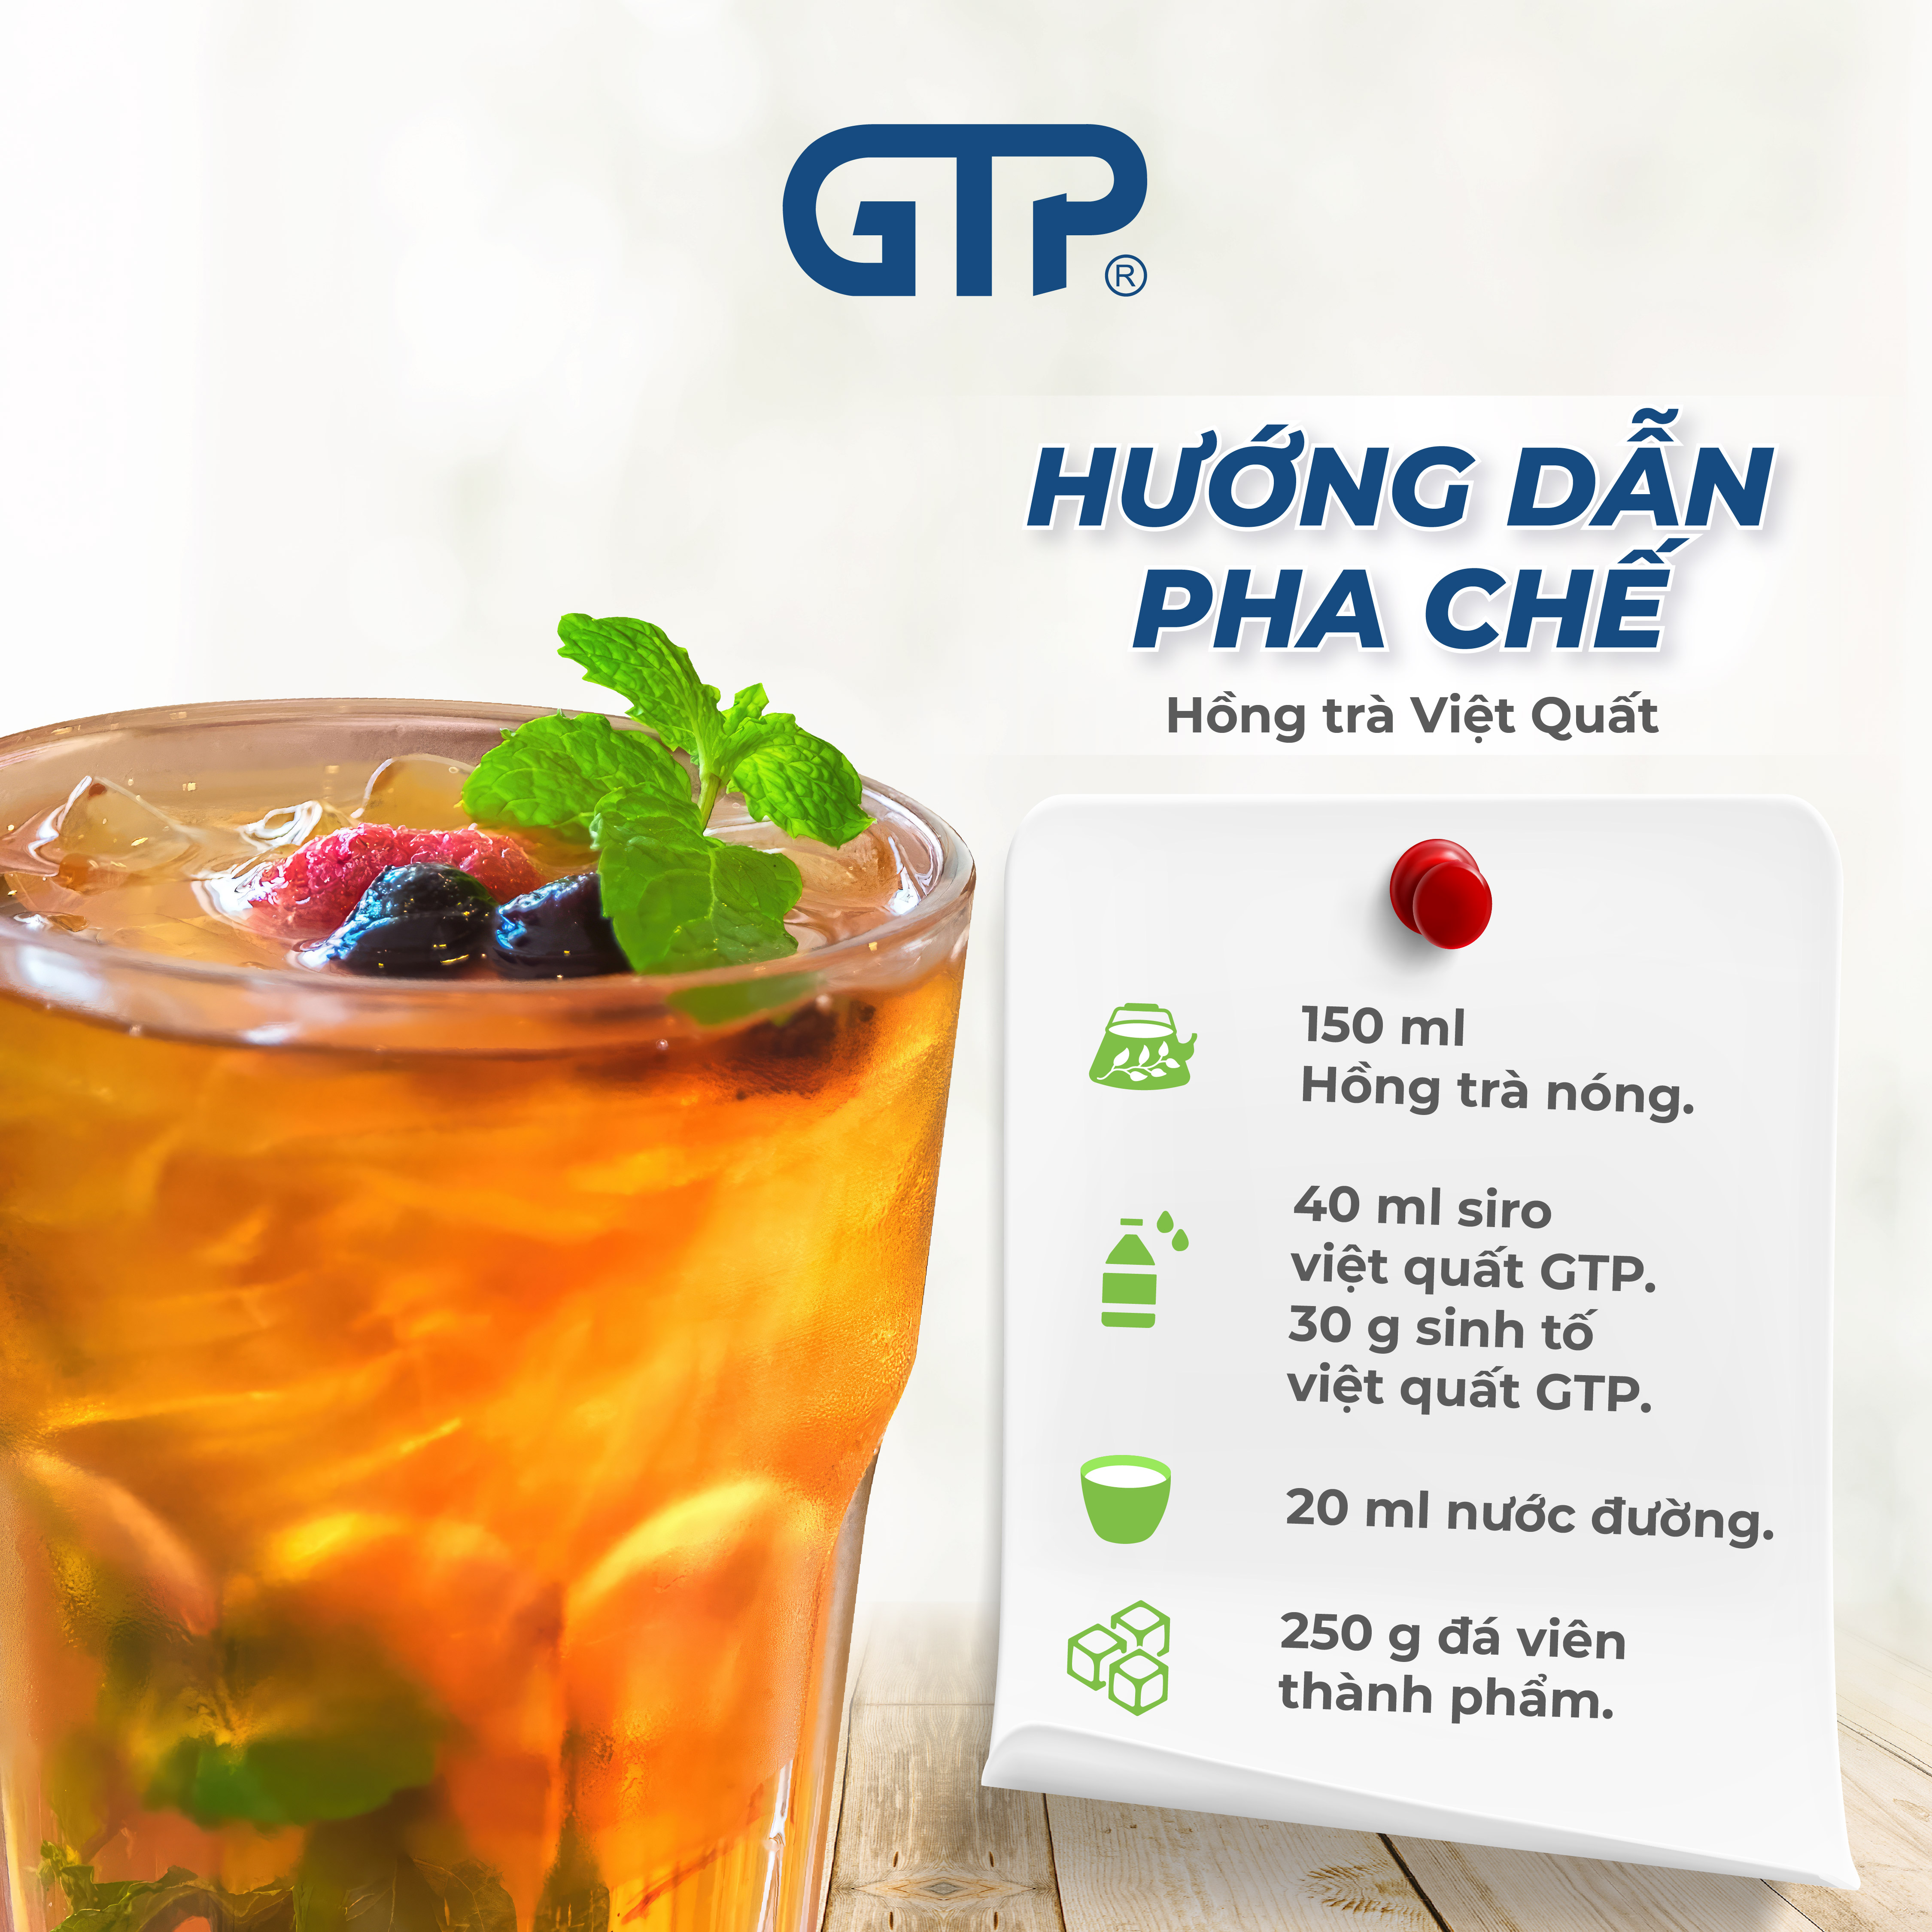 Siro Việt Quất GTP - Chuyên dùng pha chế: Trà sữa, Trà trái cây, Cocktail, Mocktail…